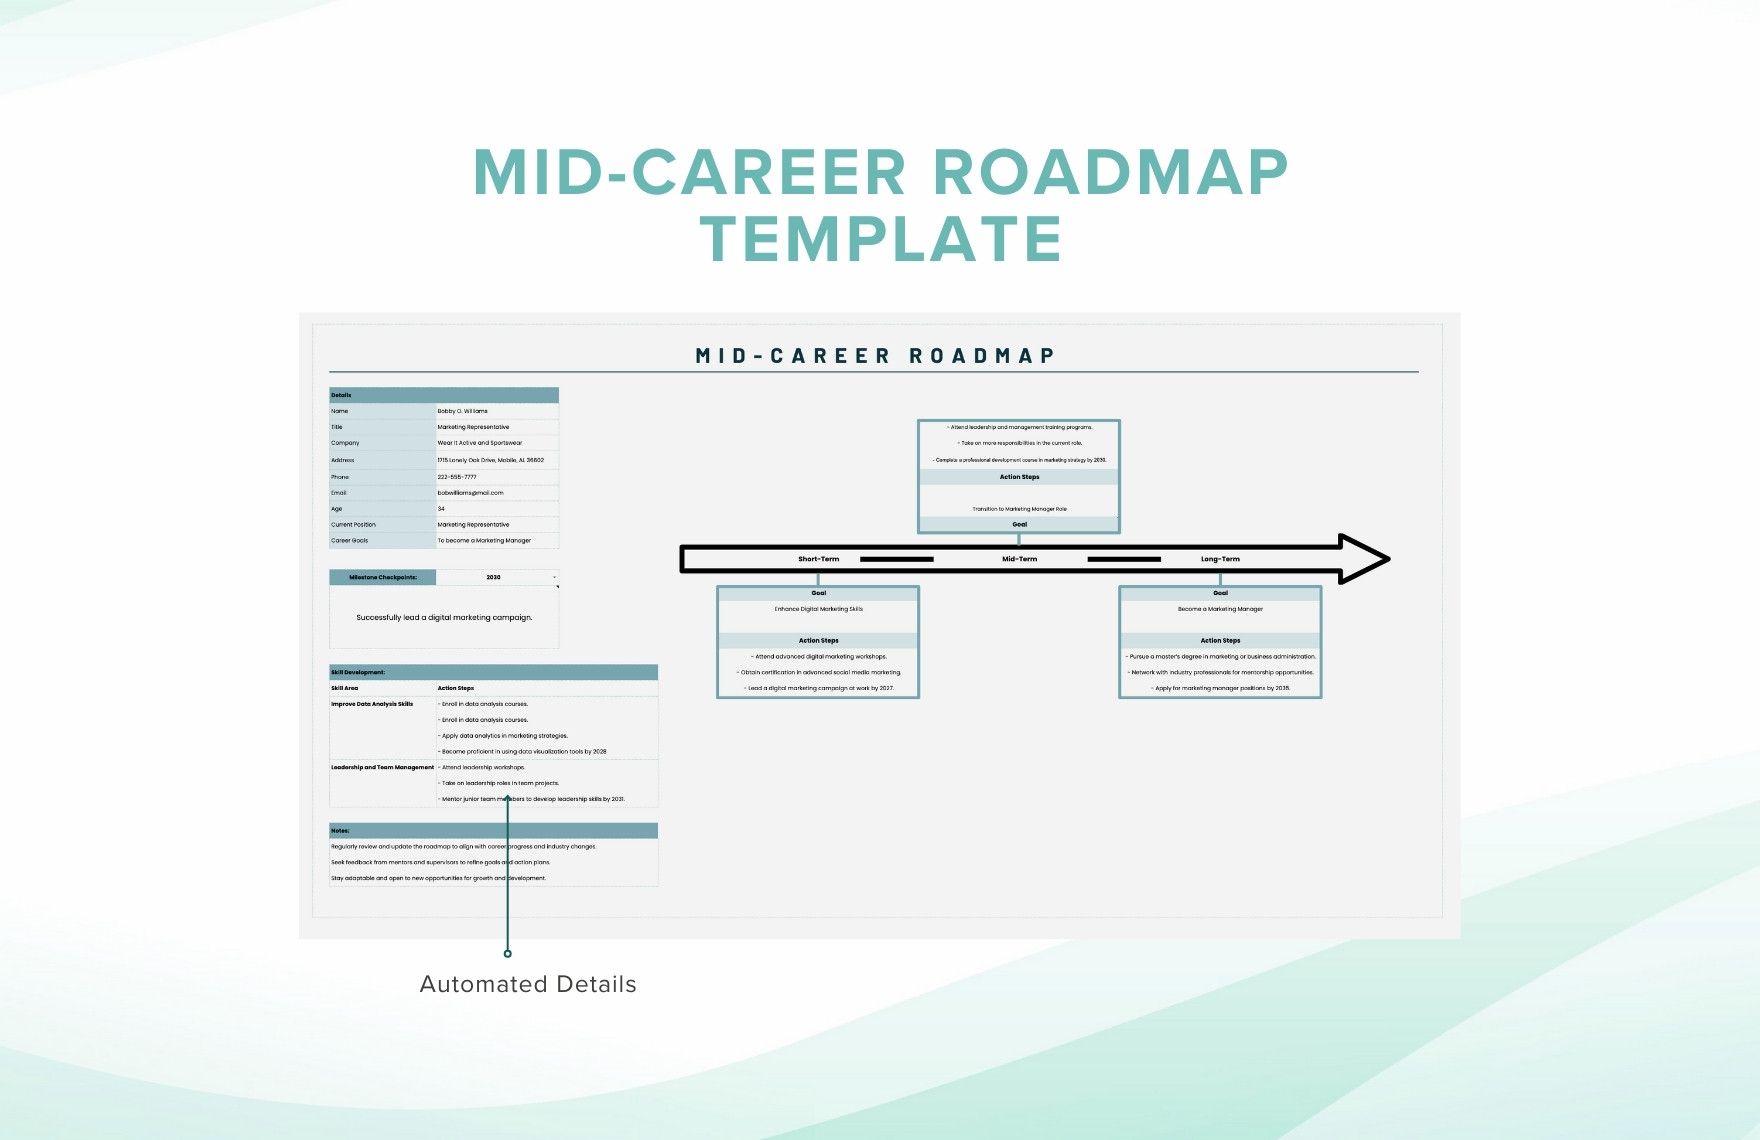 MidCareer Roadmap Template